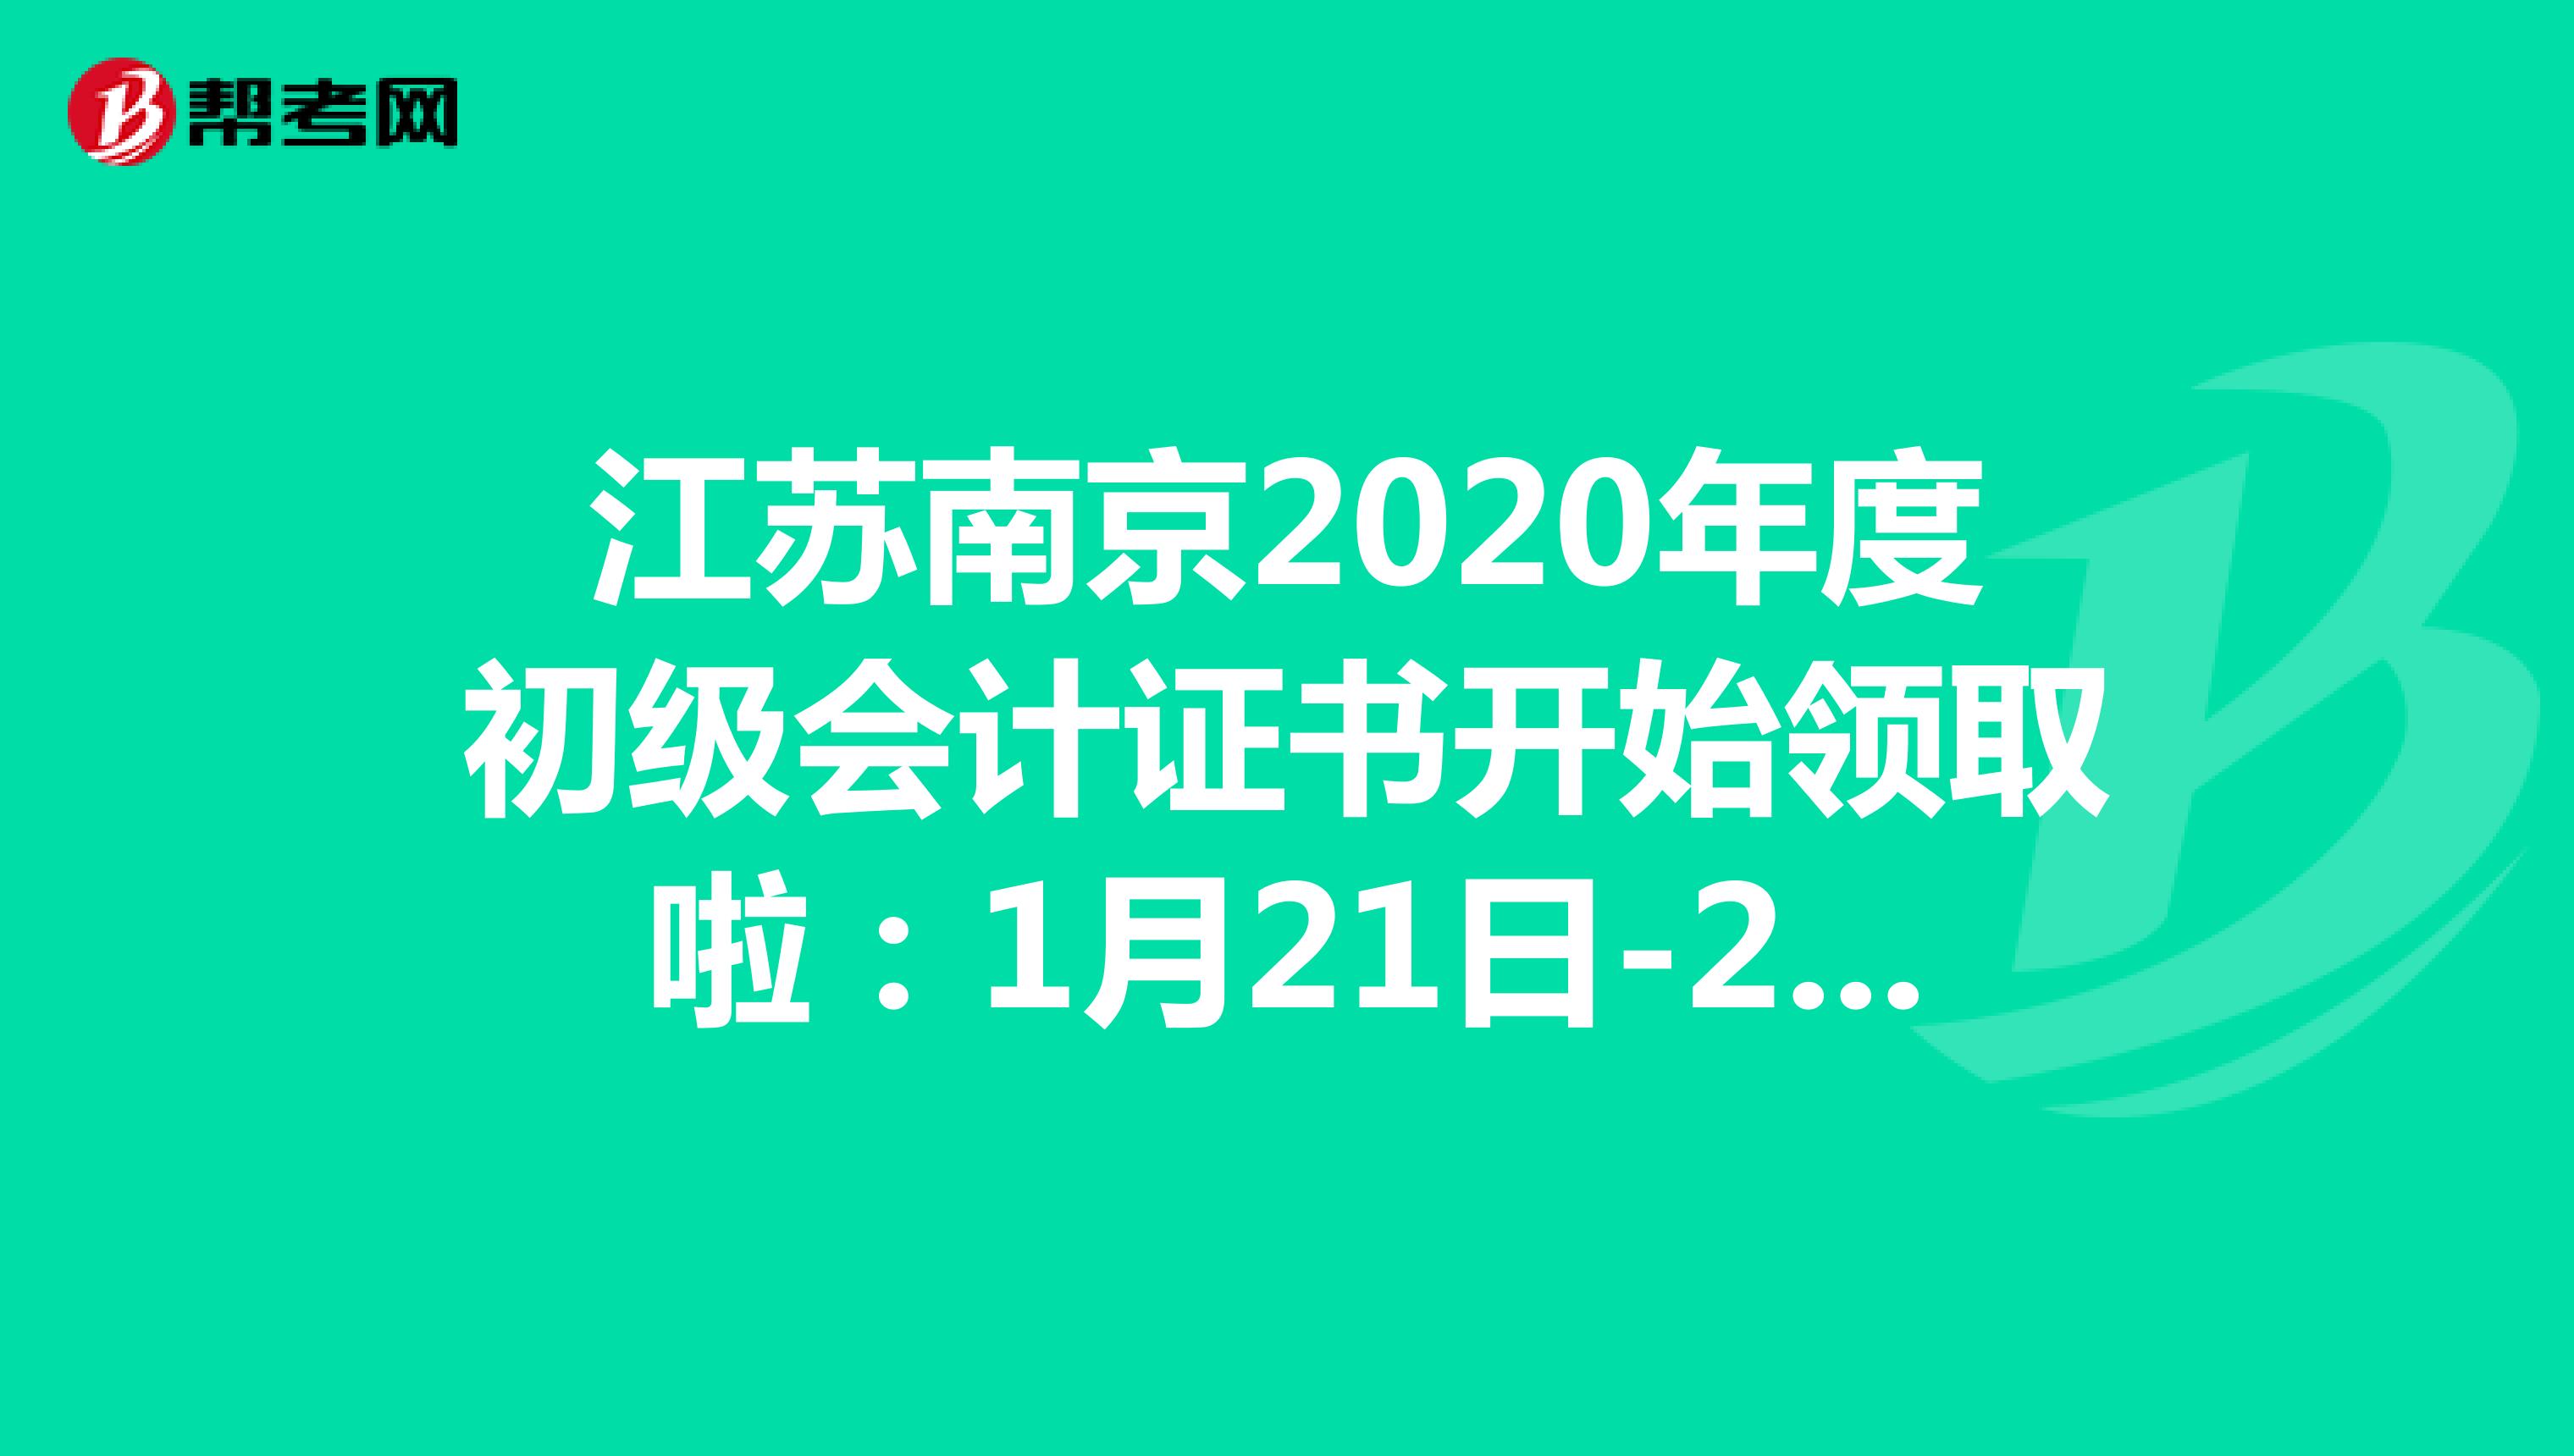 江苏南京2020年度初级会计证书开始领取啦：1月21日-2月10日